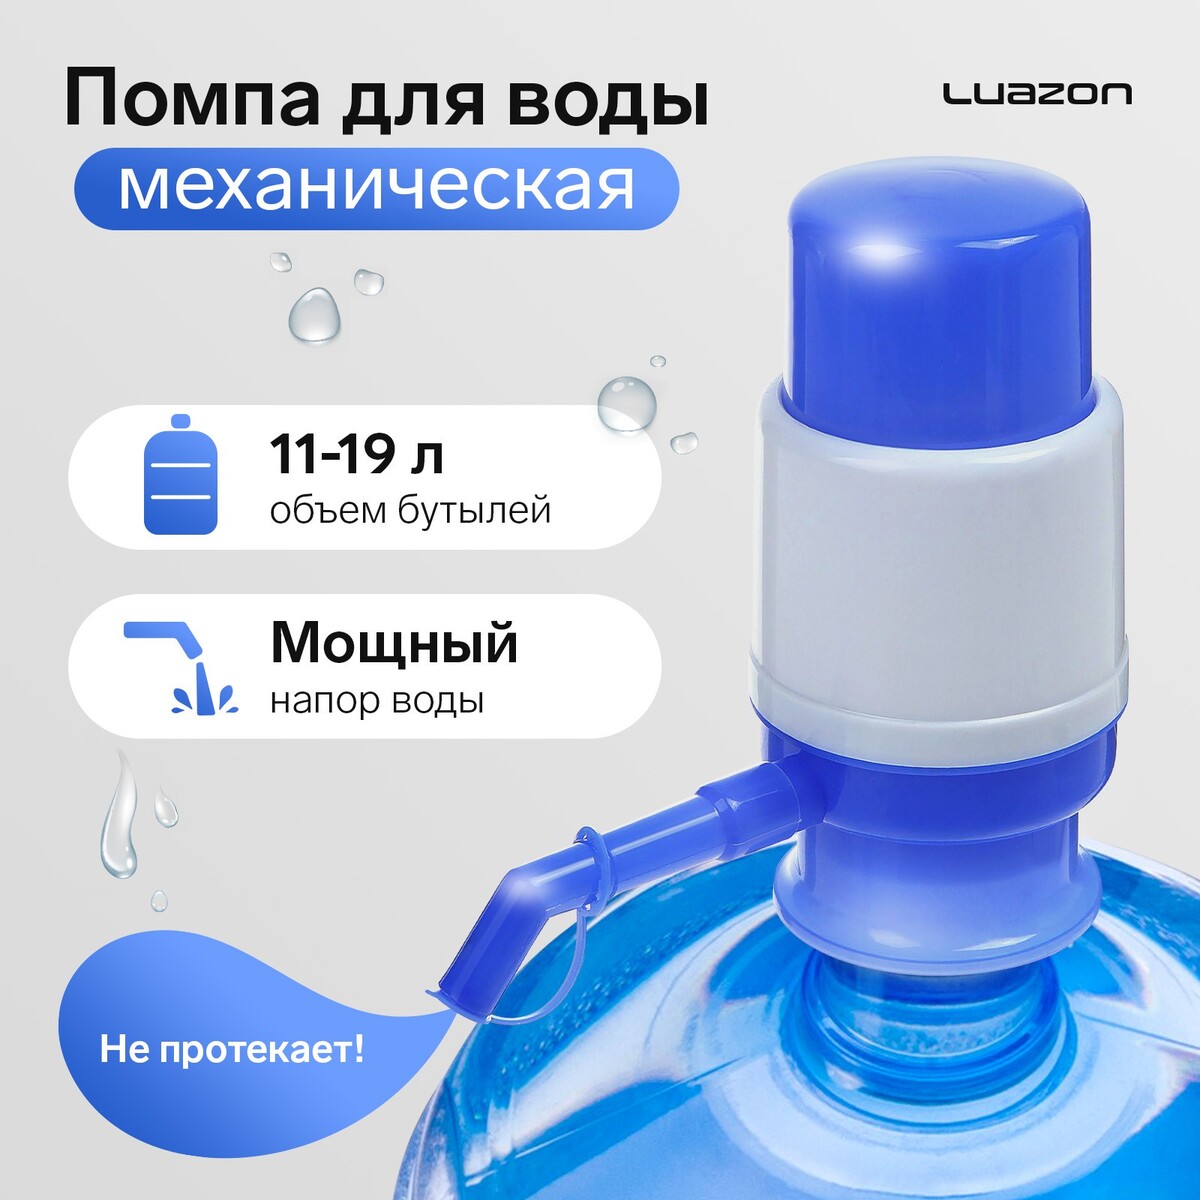 Помпа для воды luazon, механическая, малая, под бутыль от 11 до 19 л, голубая